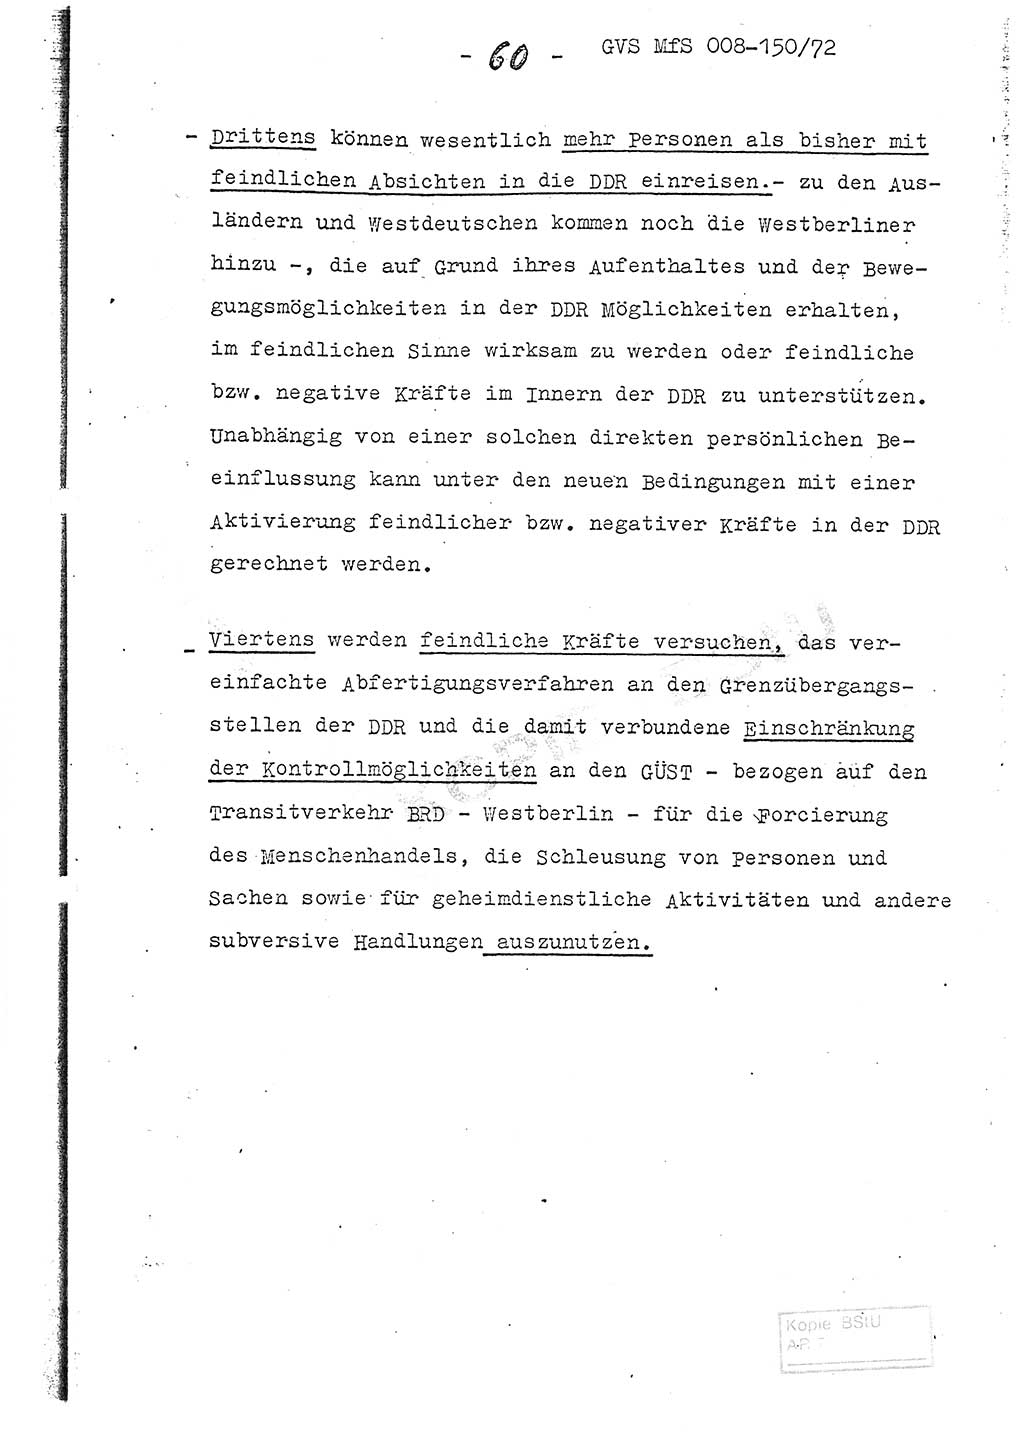 Referat (Entwurf) des Genossen Minister (Generaloberst Erich Mielke) auf der Dienstkonferenz 1972, Ministerium für Staatssicherheit (MfS) [Deutsche Demokratische Republik (DDR)], Der Minister, Geheime Verschlußsache (GVS) 008-150/72, Berlin 25.2.1972, Seite 60 (Ref. Entw. DK MfS DDR Min. GVS 008-150/72 1972, S. 60)